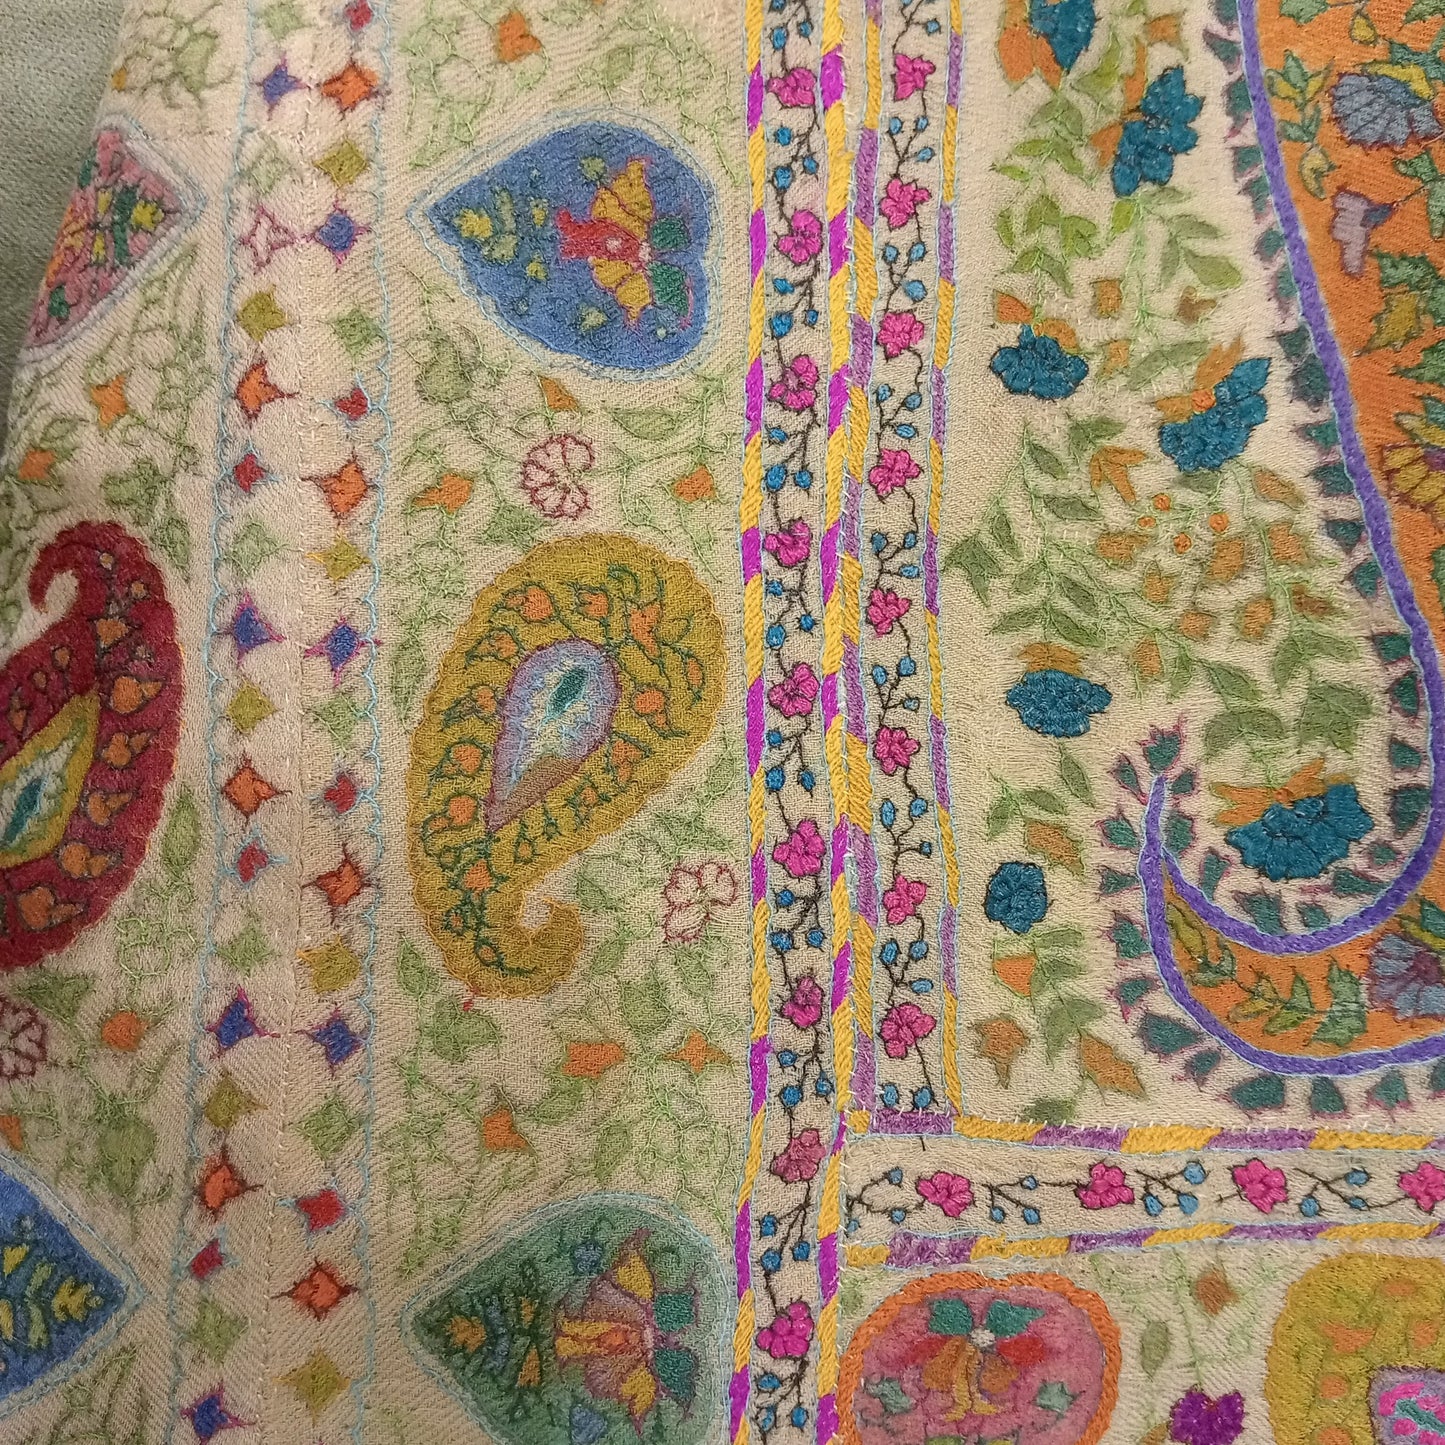 Hand Embroidered KalamKari shawl - Green